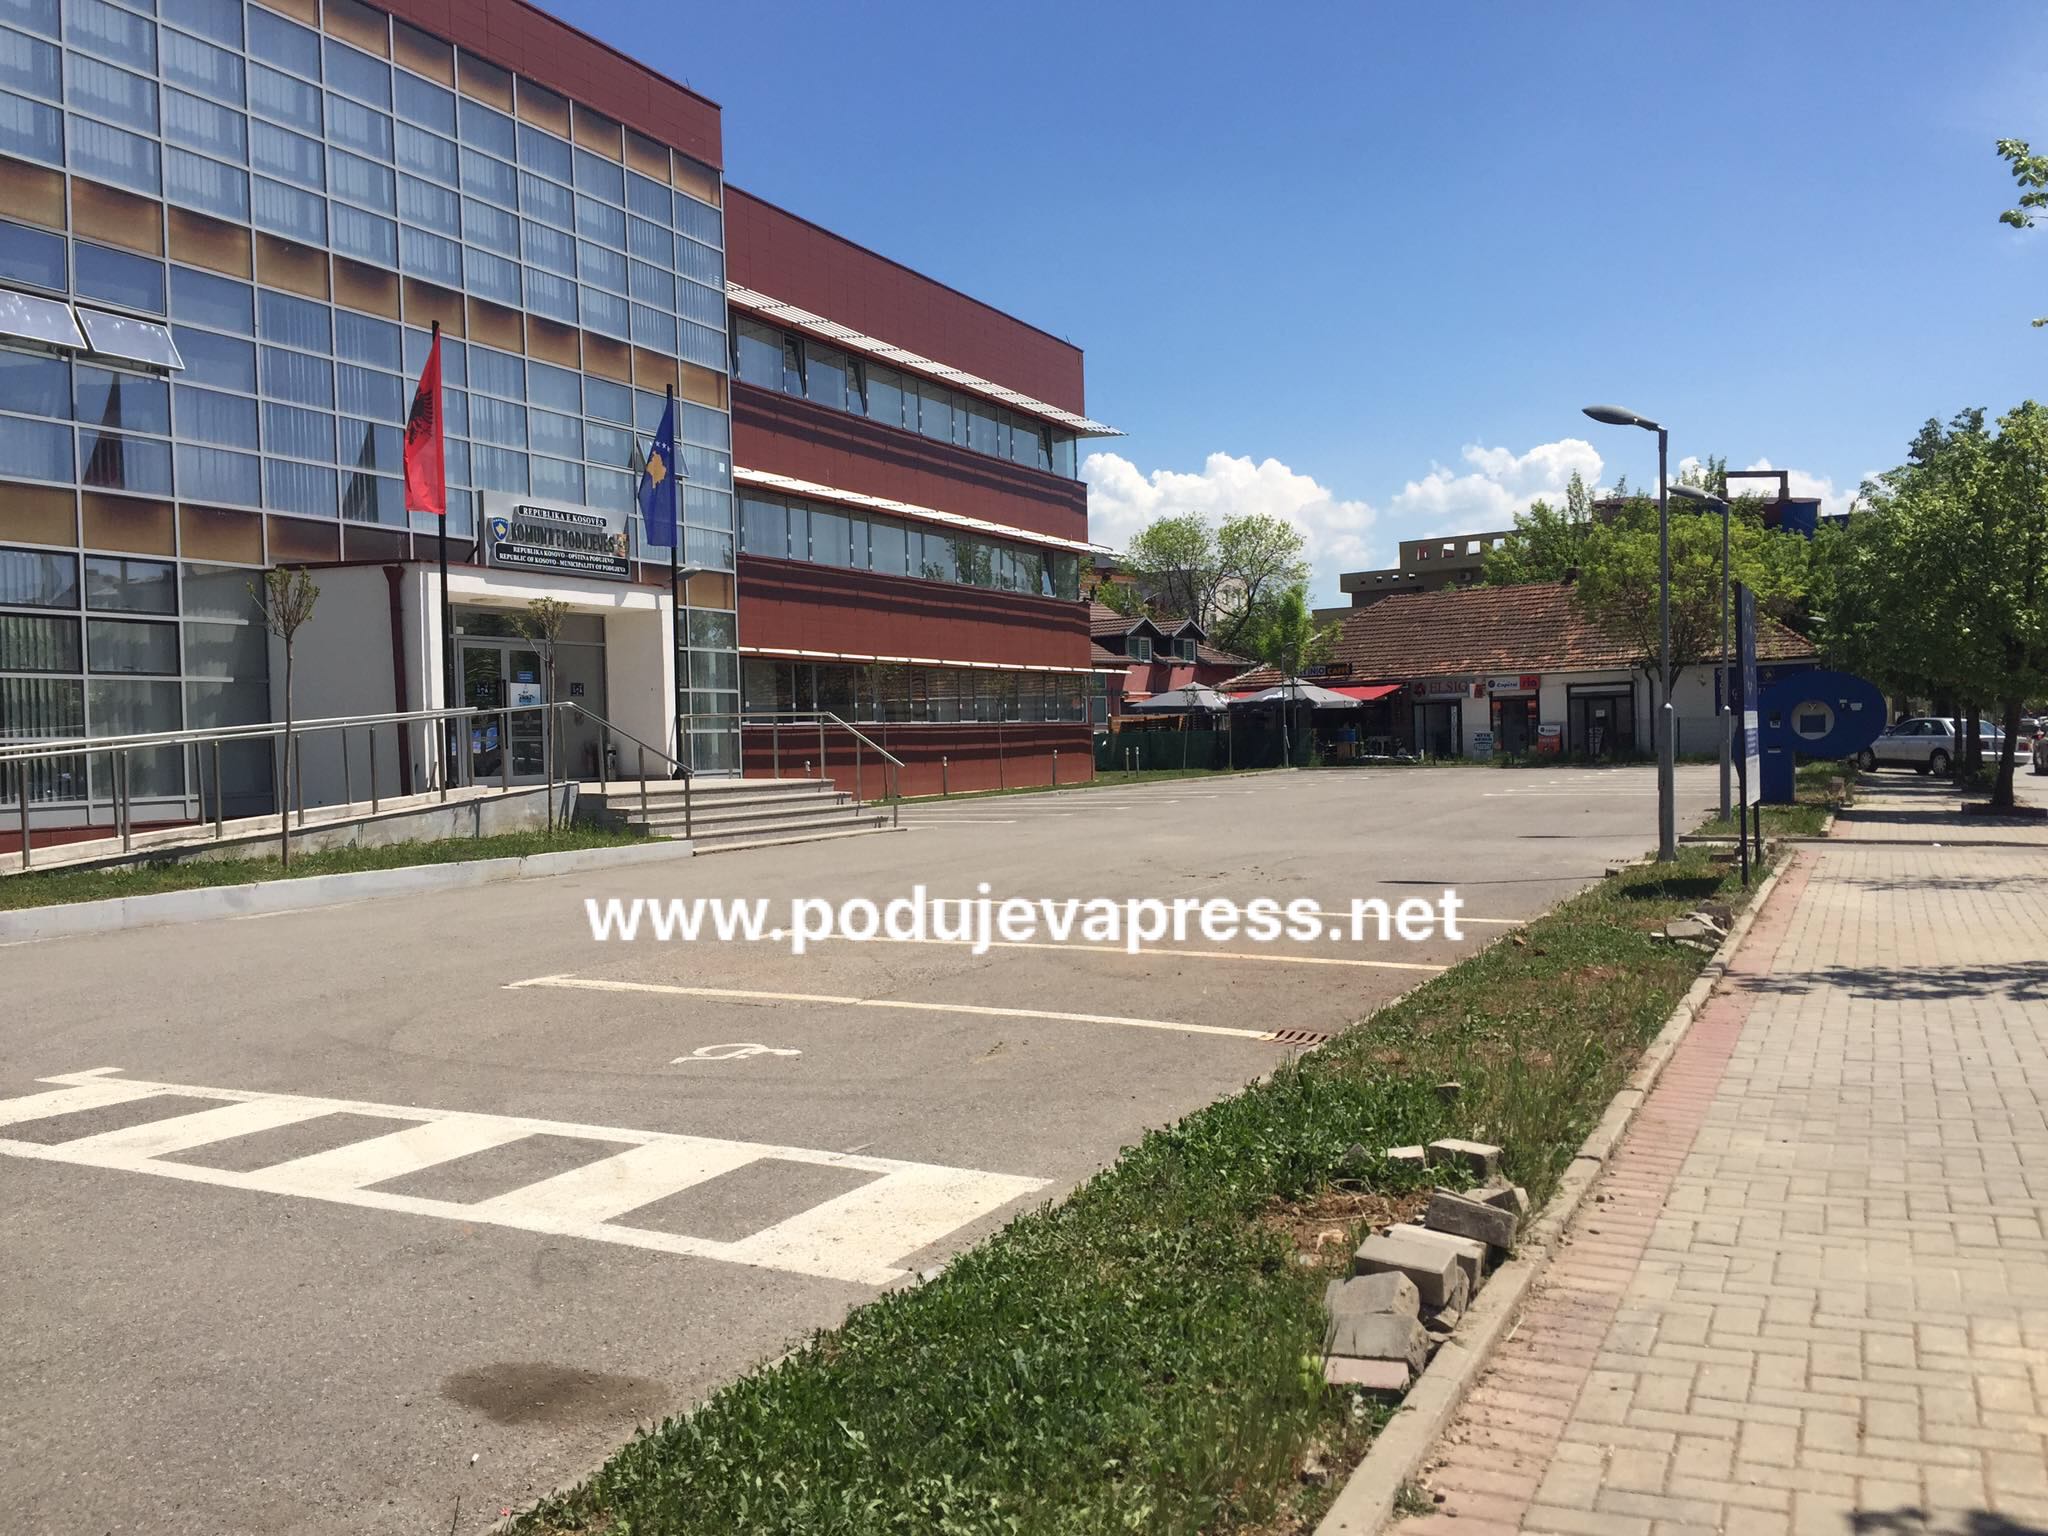  Përsëri parkingu i Komunës së Podujevës do të jetë në shfrytëzim të atyre që kanë vetura me targa të huaja, kjo nuk vlen për ata me targa vendore